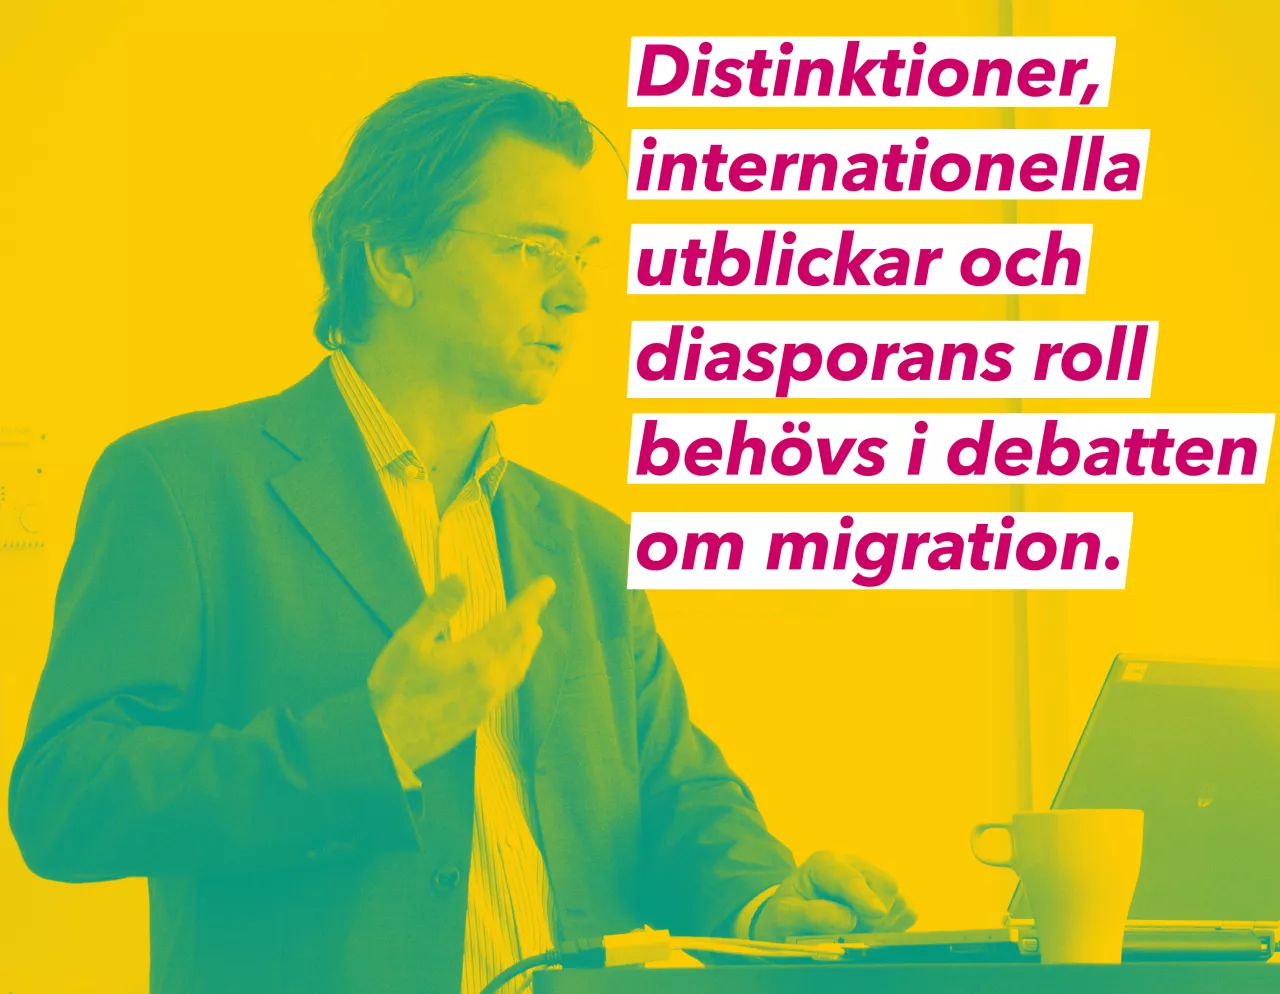 Delmis kanslichef Kristof Tamas med text på bilden som säger "distinktioner, internationella utblickar och diasporans roll behövs i debatten om migration".